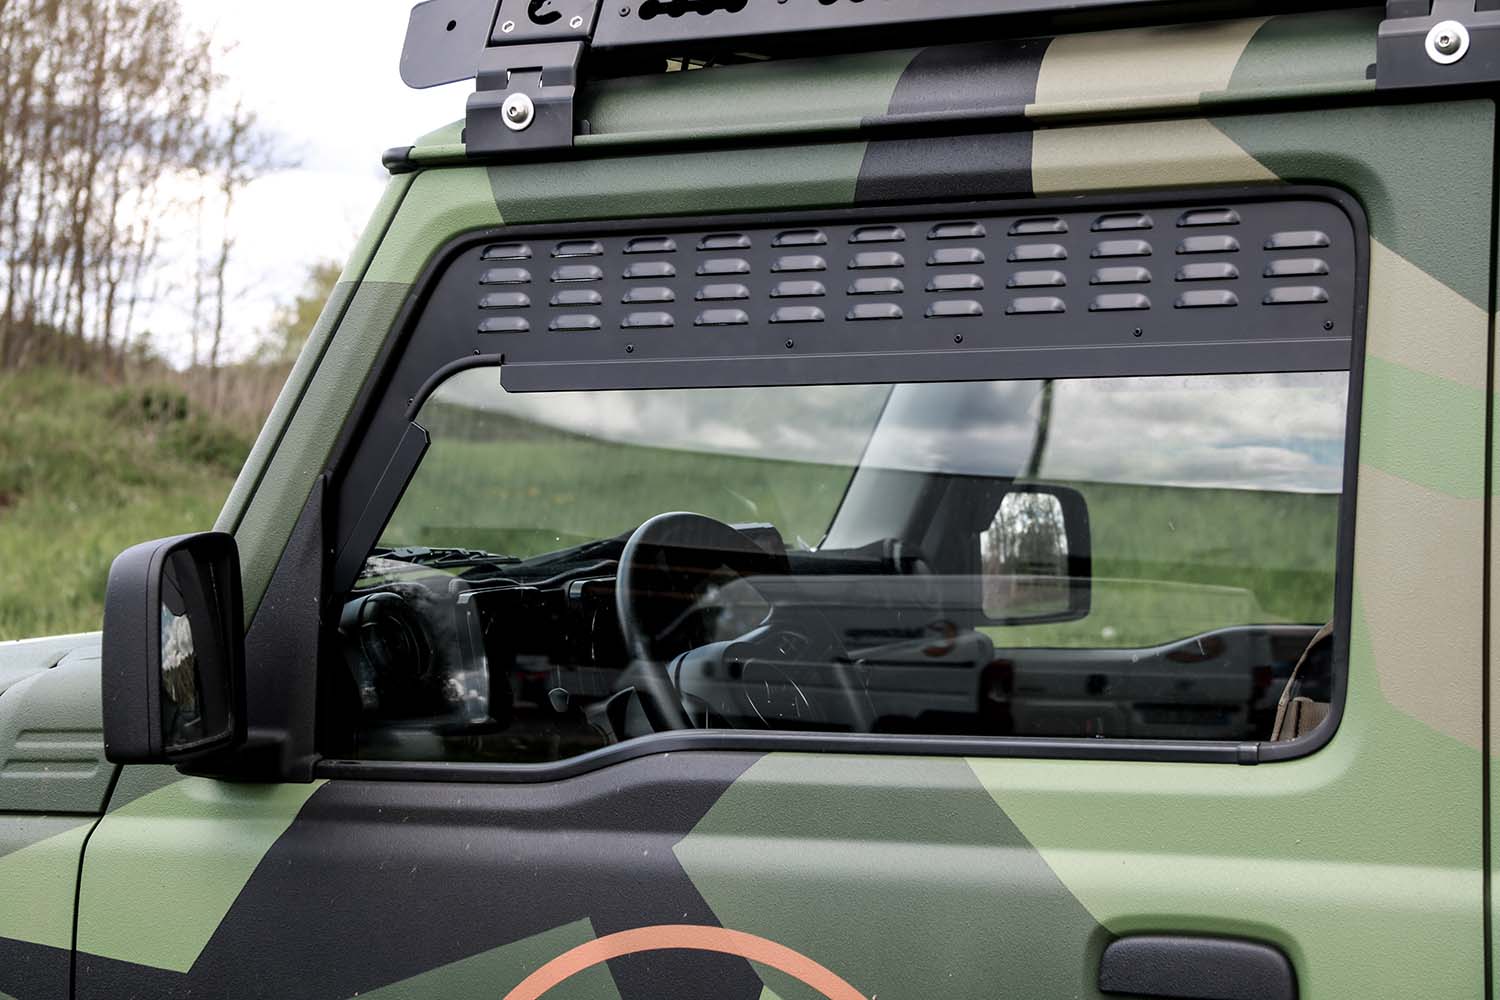  Ihr zuverlässiger Partner in Offroad-Tuning! - Lüftungsbleche  vordere Seitenfenster - Suzuki Jimny II (GJ & HJ)